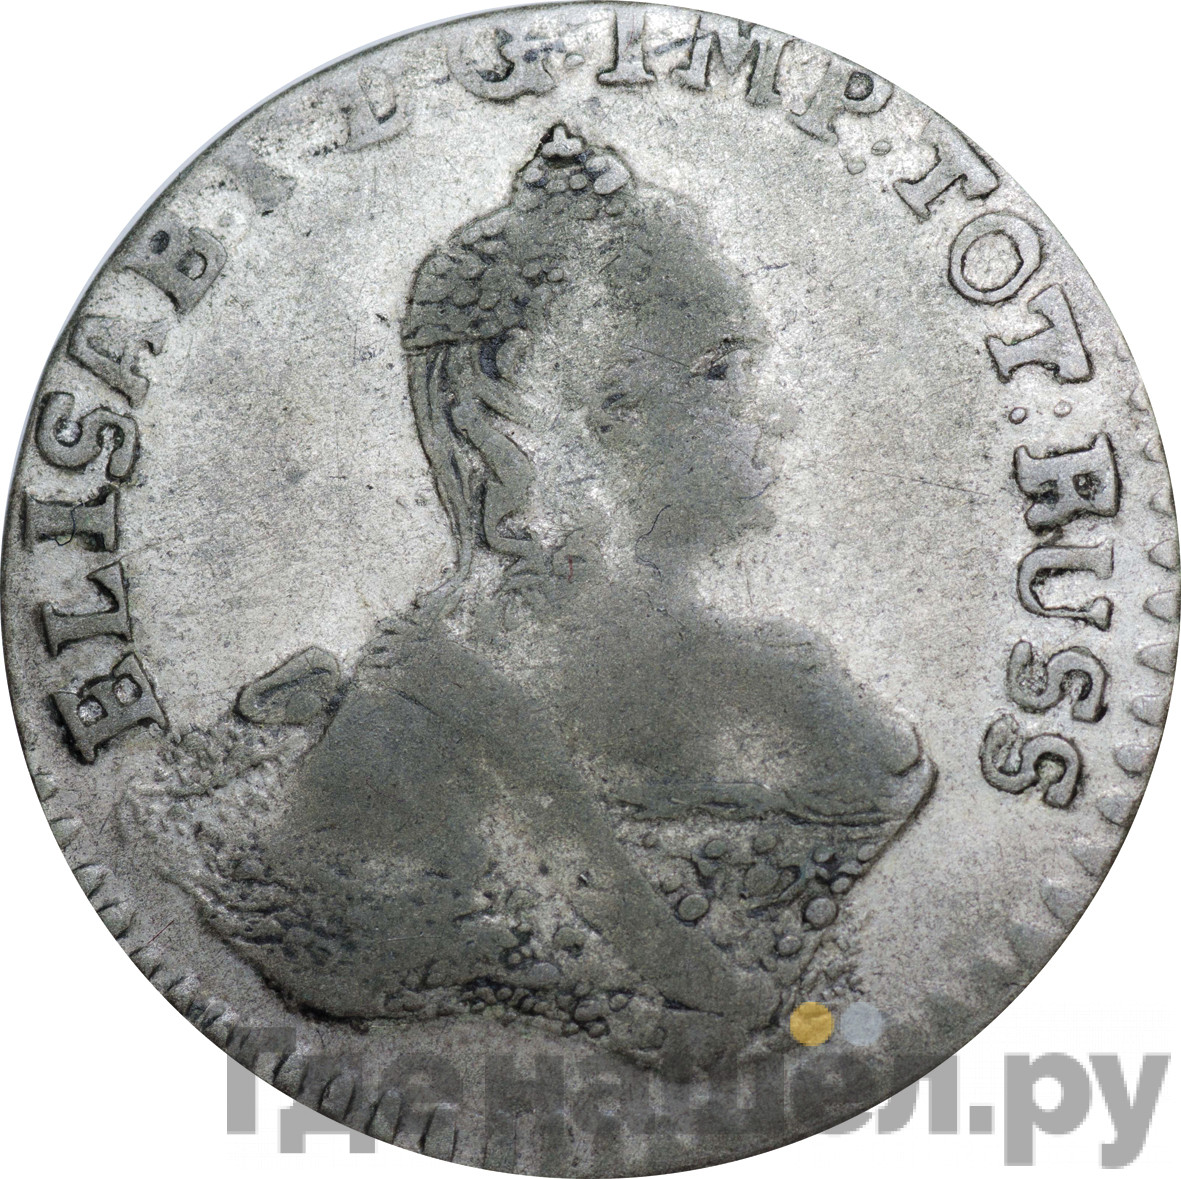 6 грошей 1762 года Для Пруссии